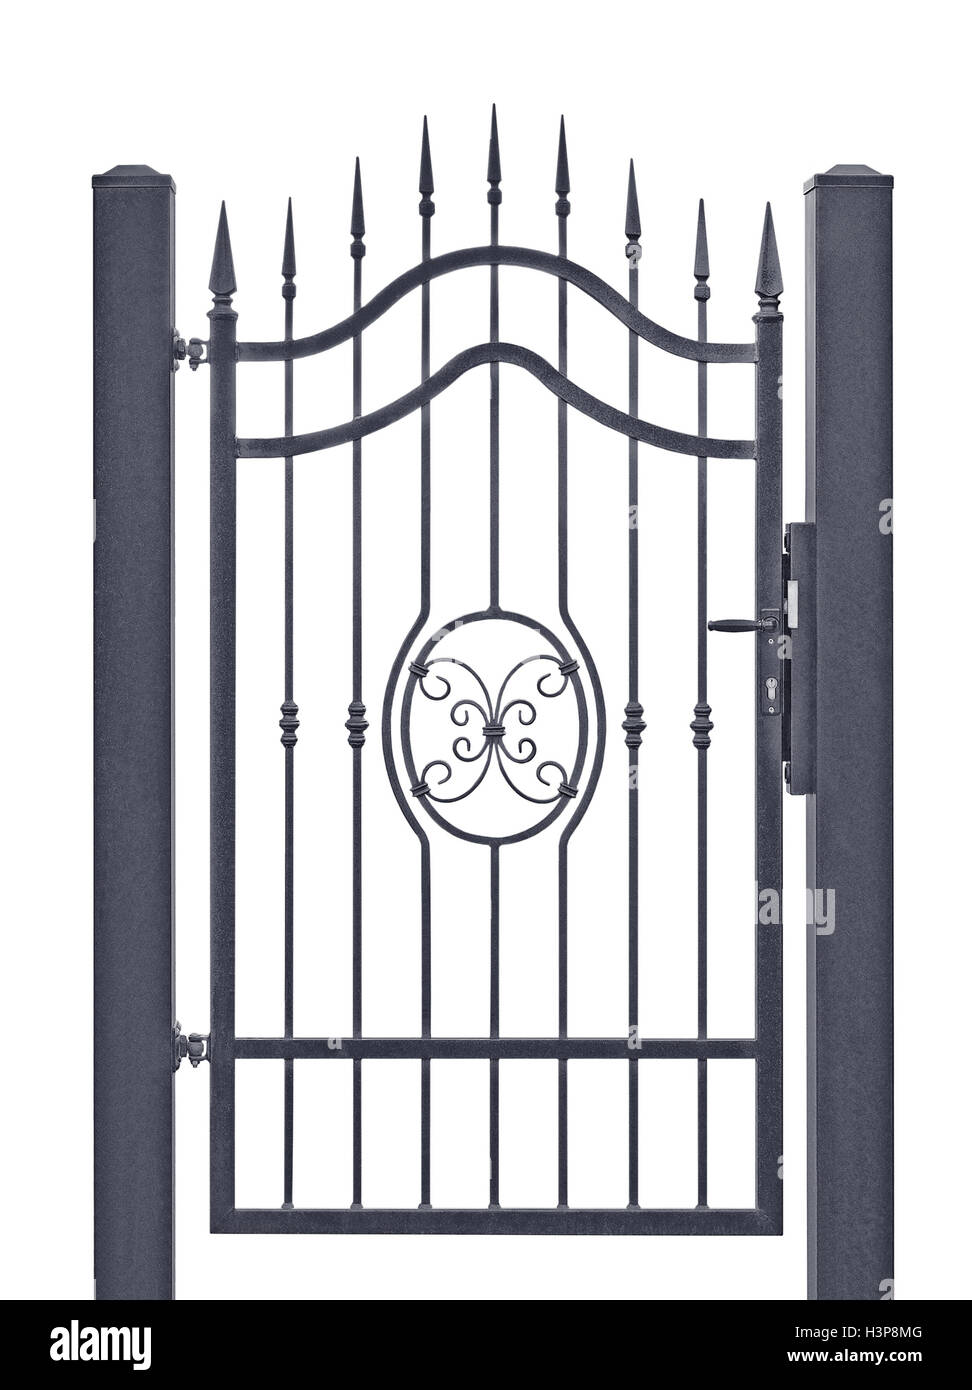 Plates Castle Shields 054.02 Gate Gates Fences ornamented Railing manufacture